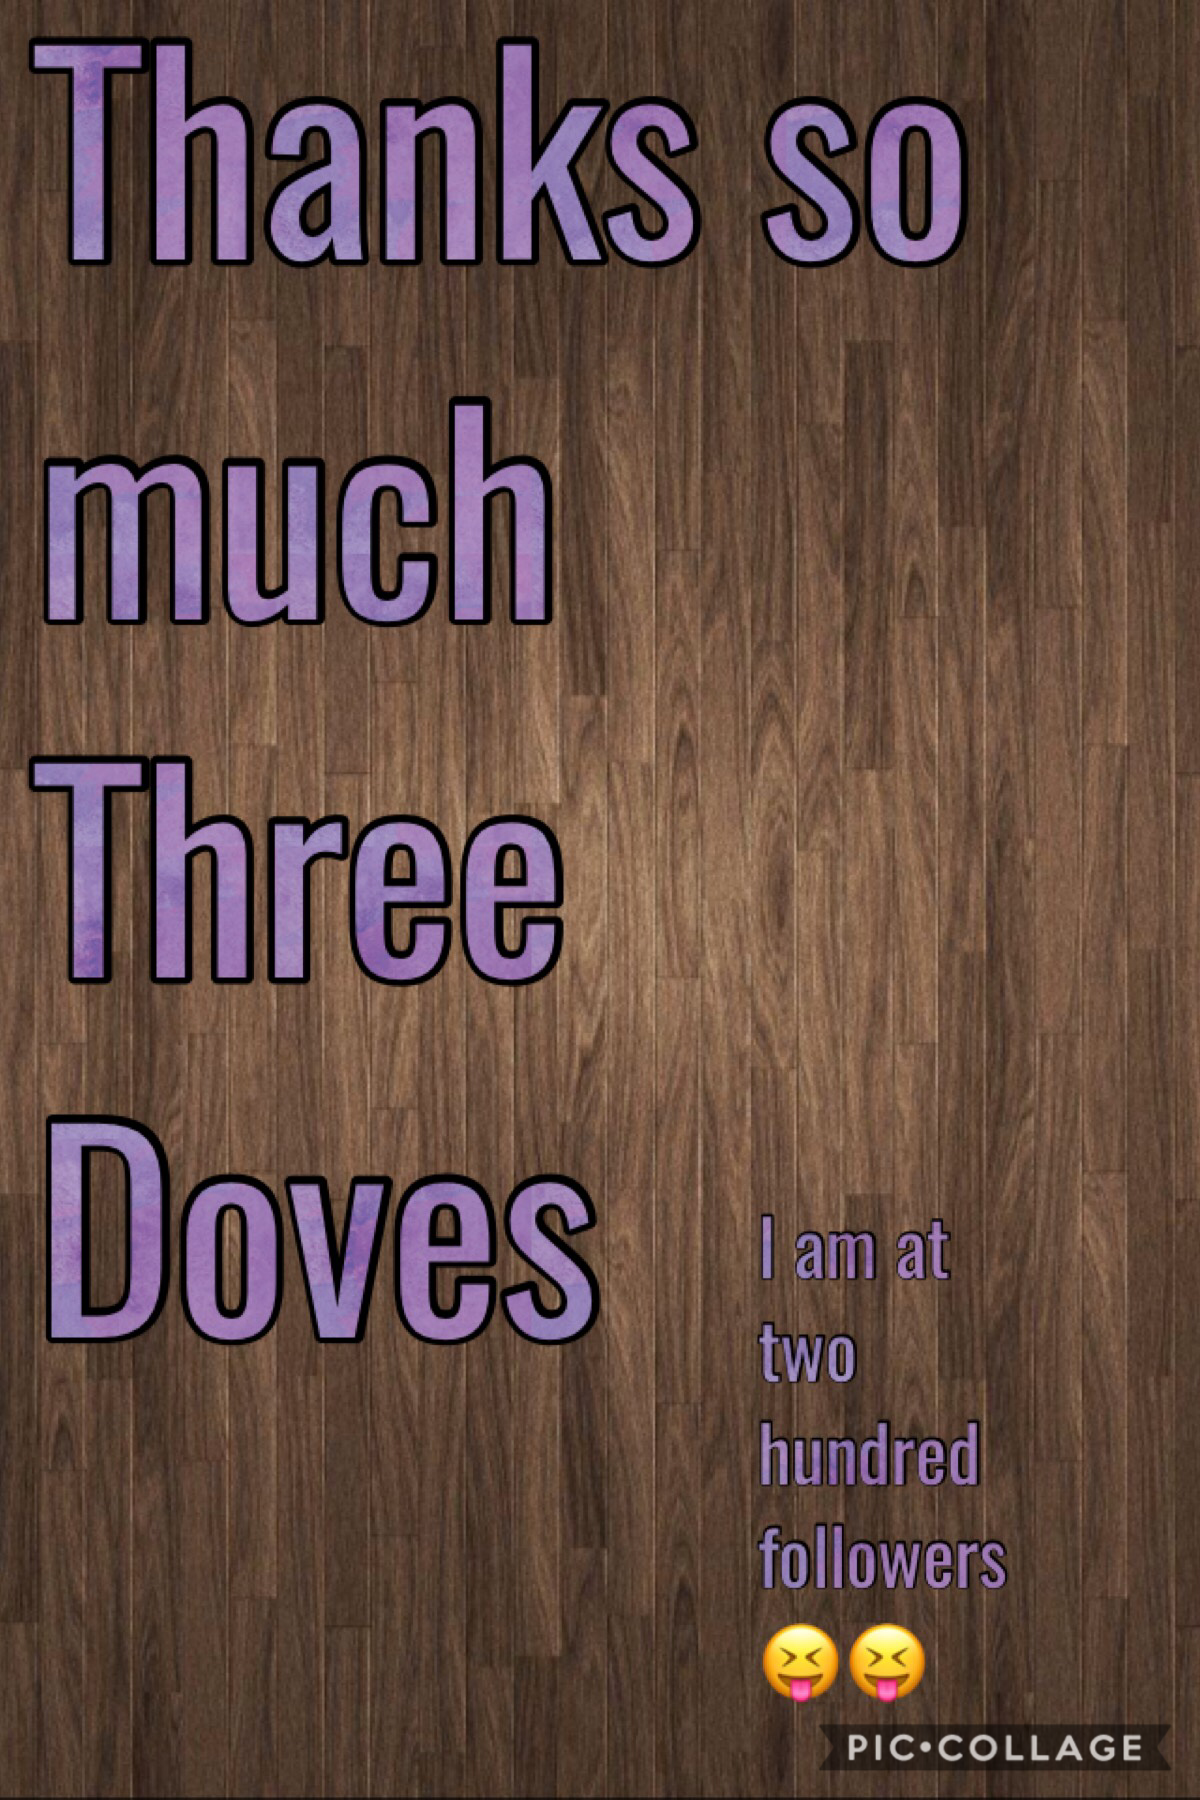 Thanks three doves